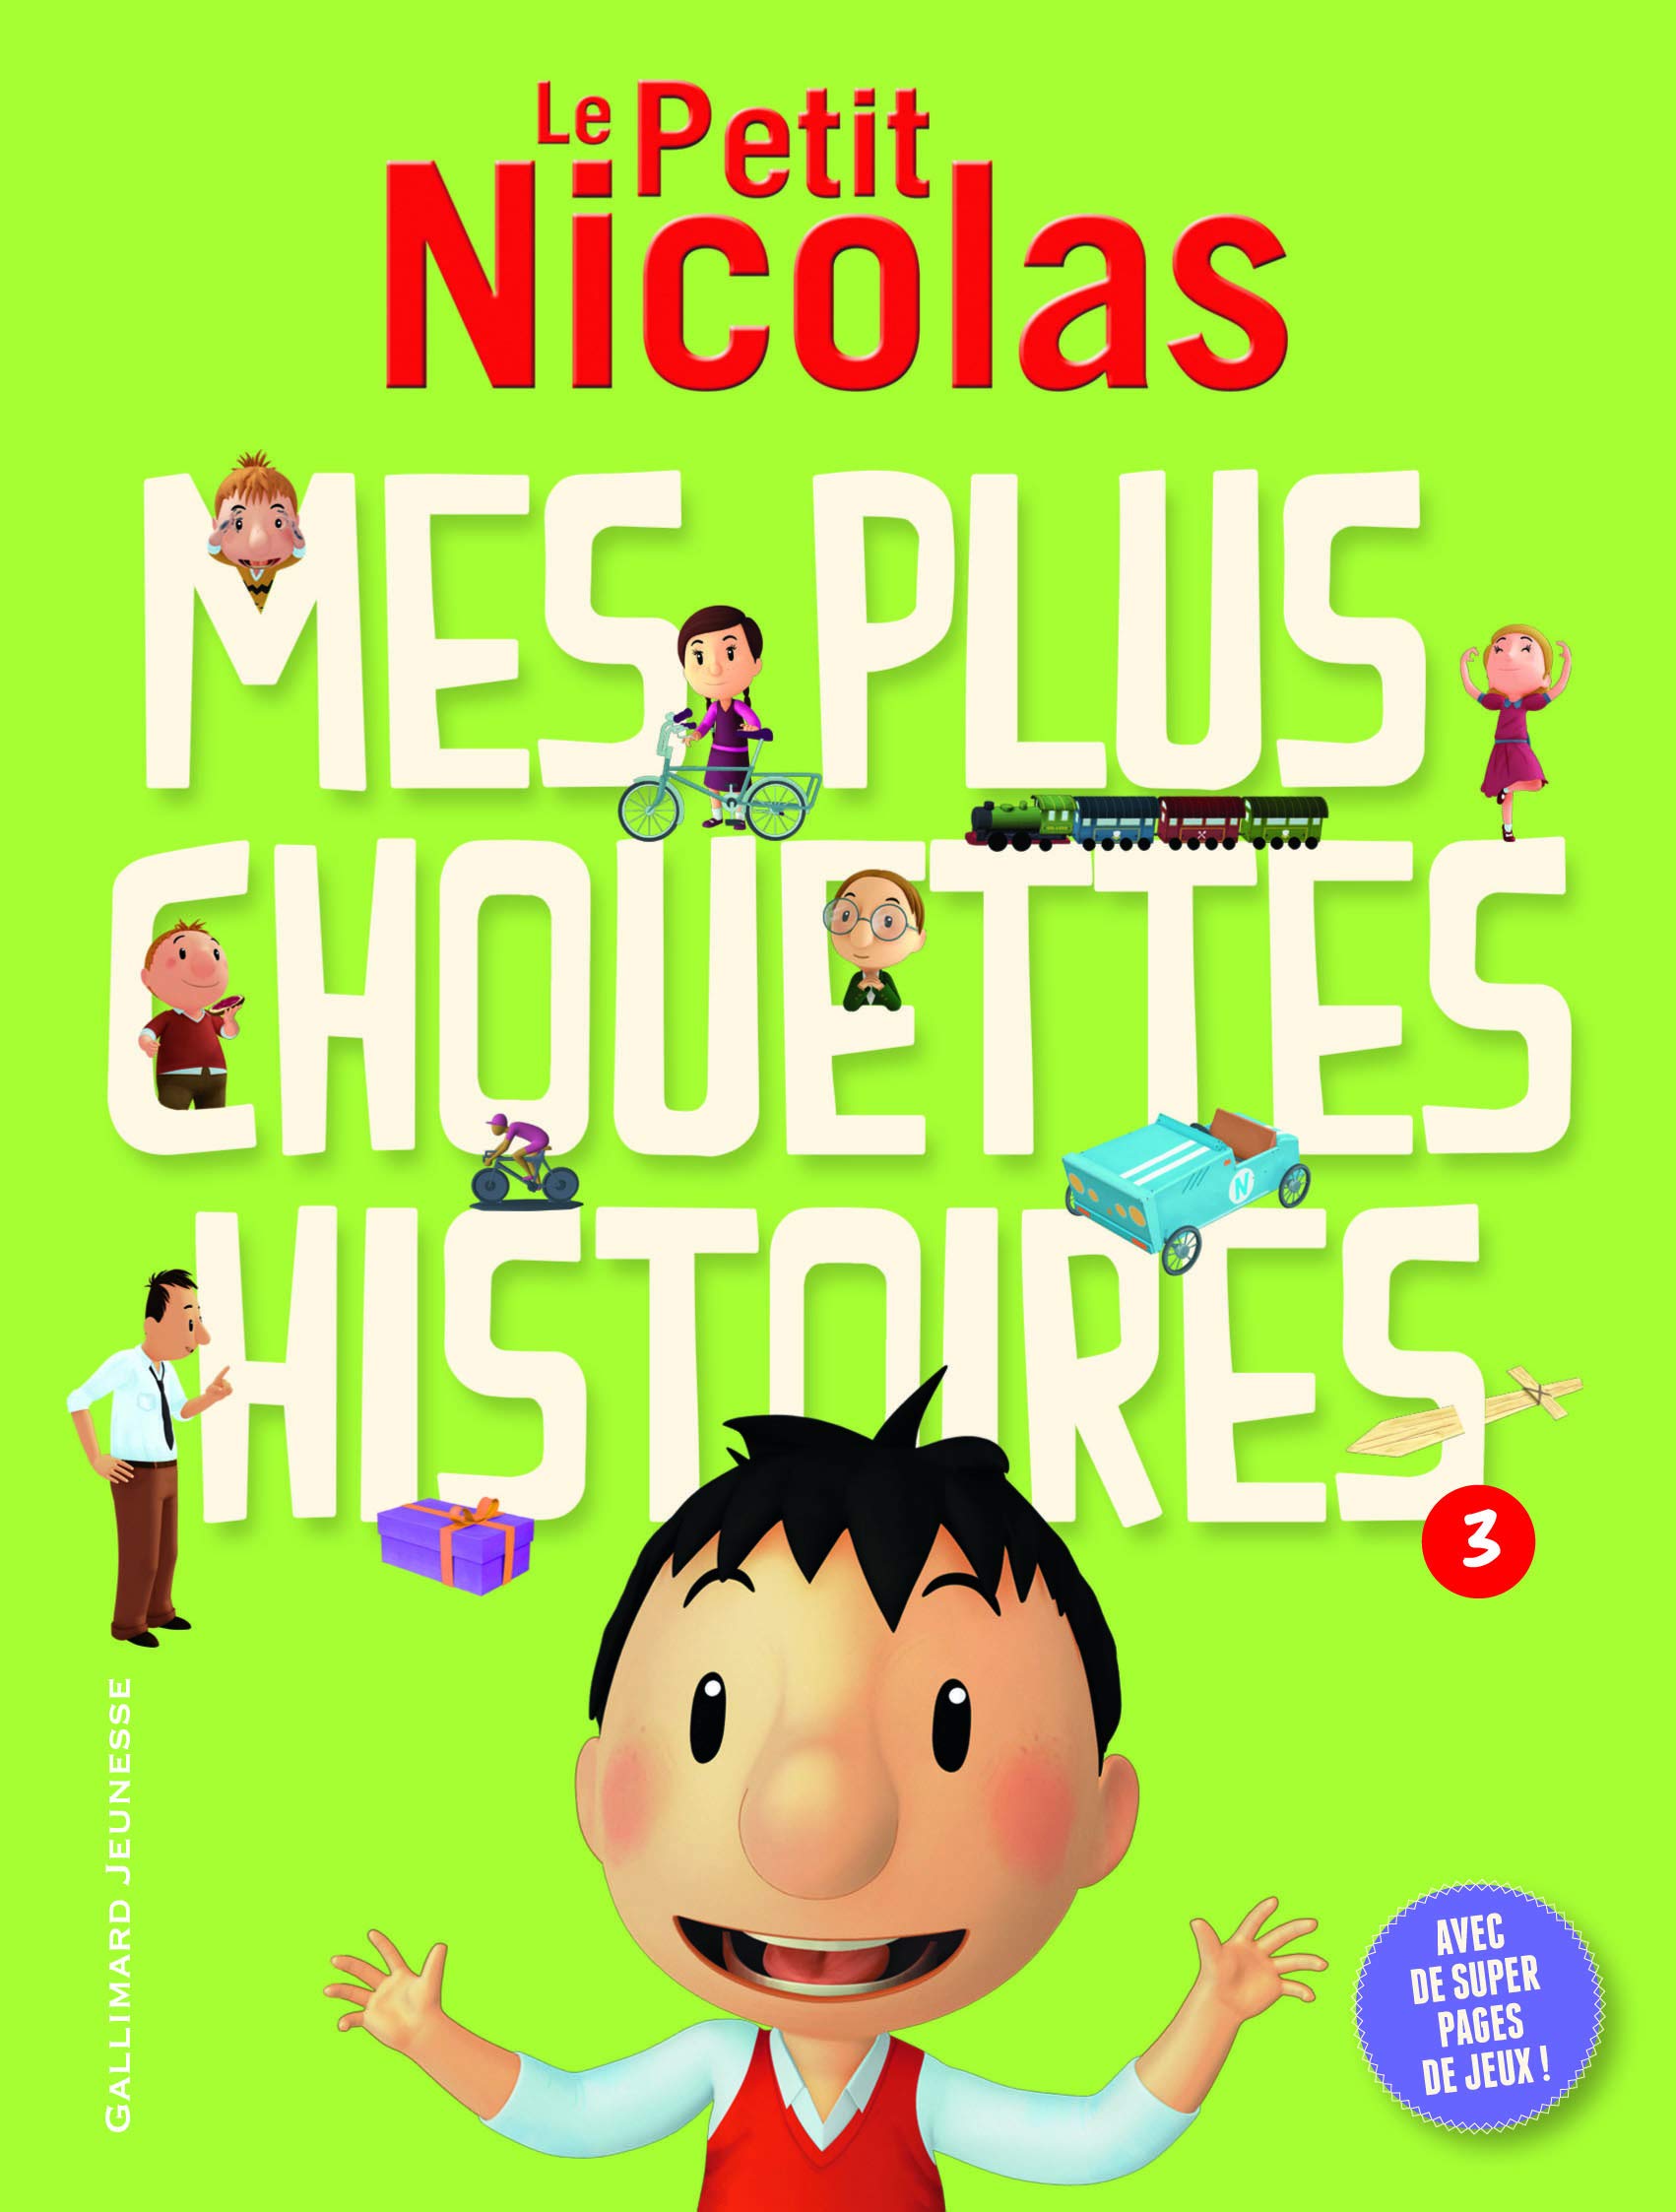 Publisher:Folio - Mes plus chouettes histoires (3) -  Emmanuelle Kecir-Lepetit